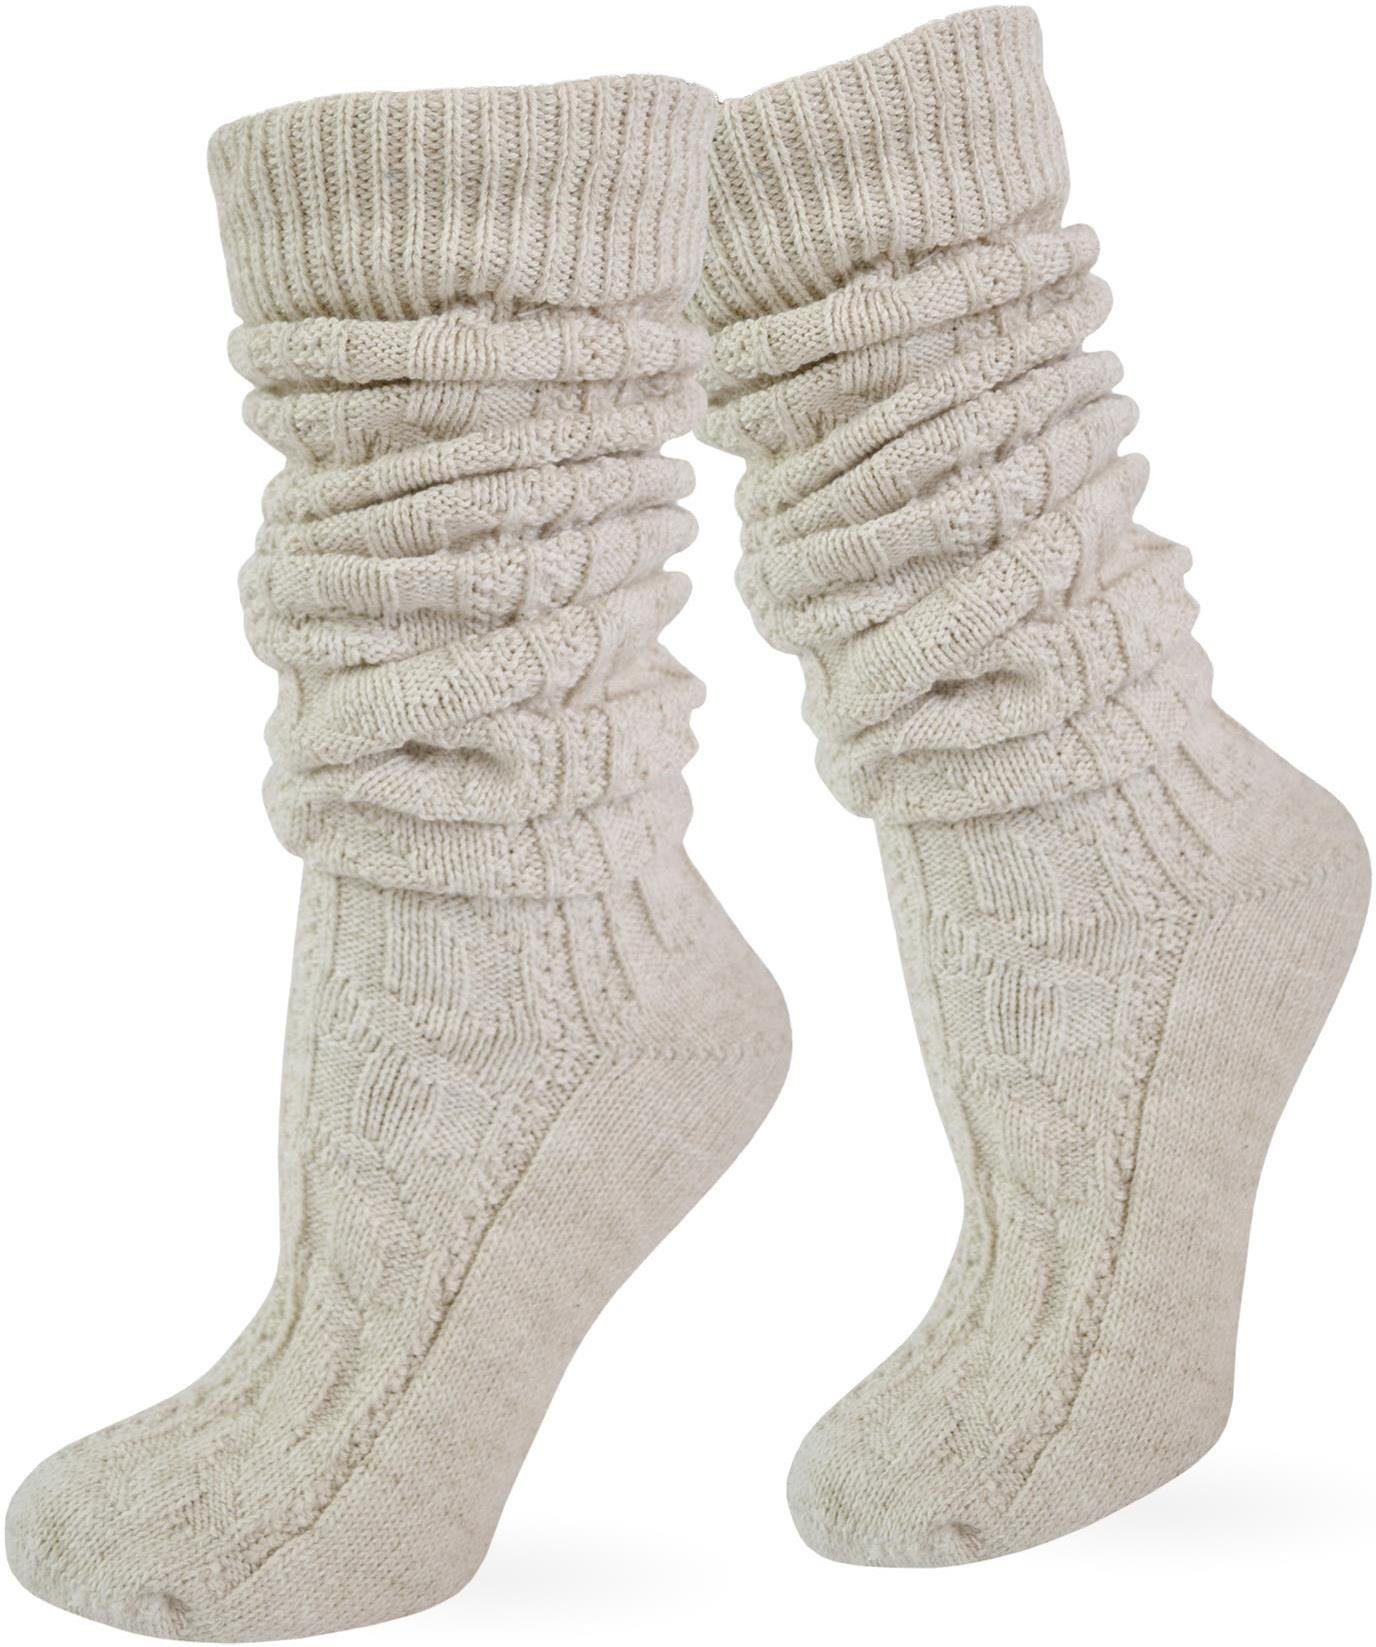 Wäsche/Bademode Socken normani Trachtensocken Trachten-Kniestrümpfe mit Leinen (1 Paar) traditionelles Zopfstrickmuster